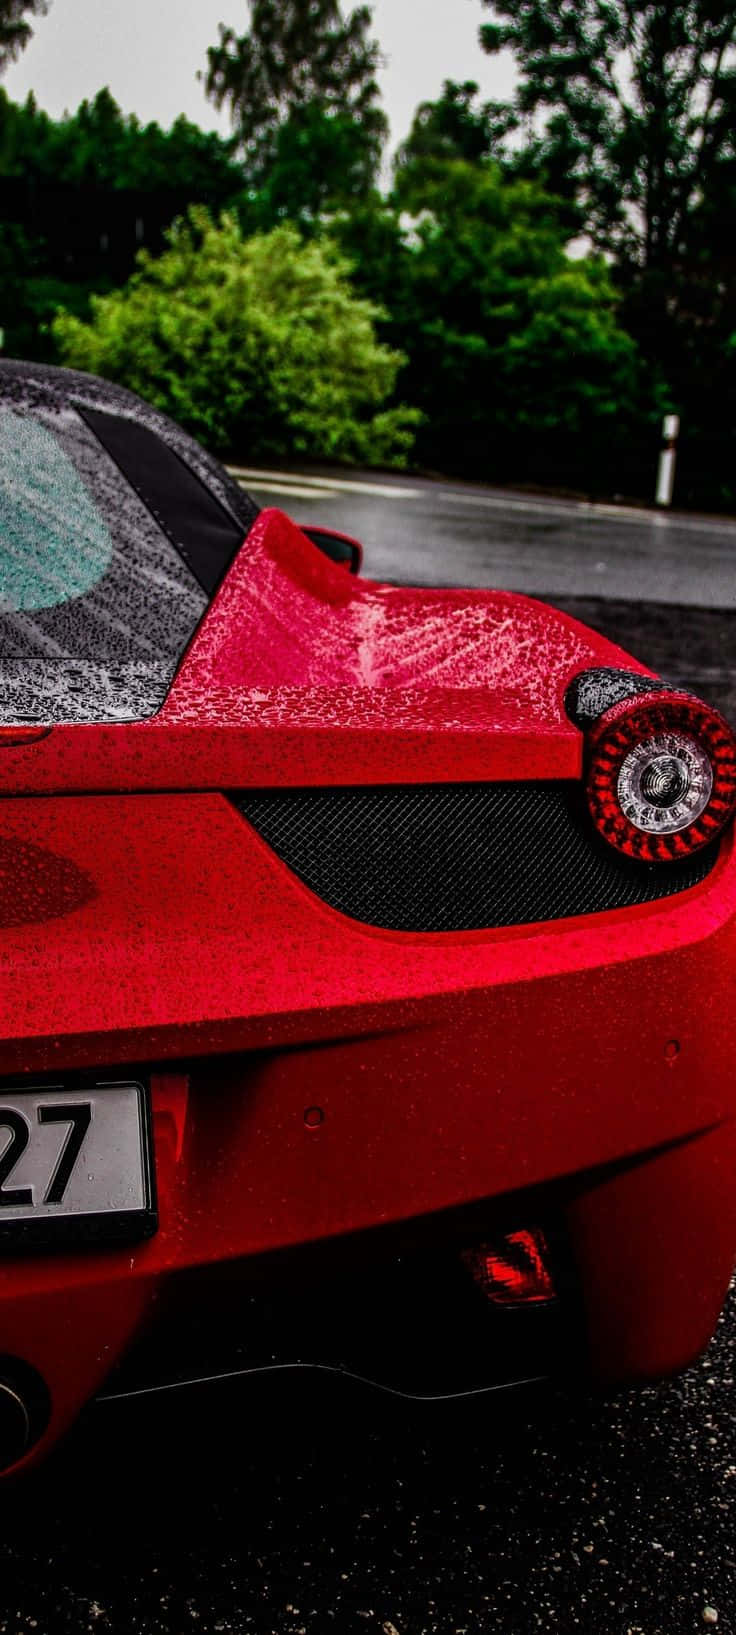 Iphonexs Max Bakgrundsbild Med Röd Ferrari 458 Från Project Cars 2